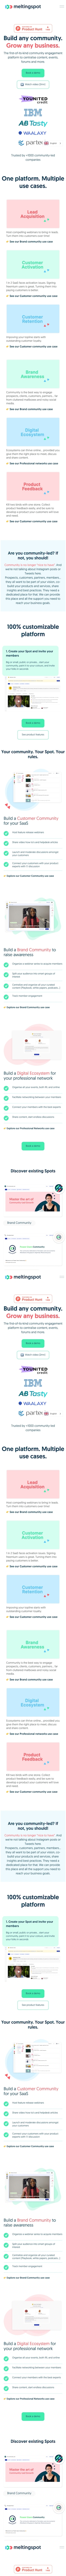 MeltingSpot landing page design